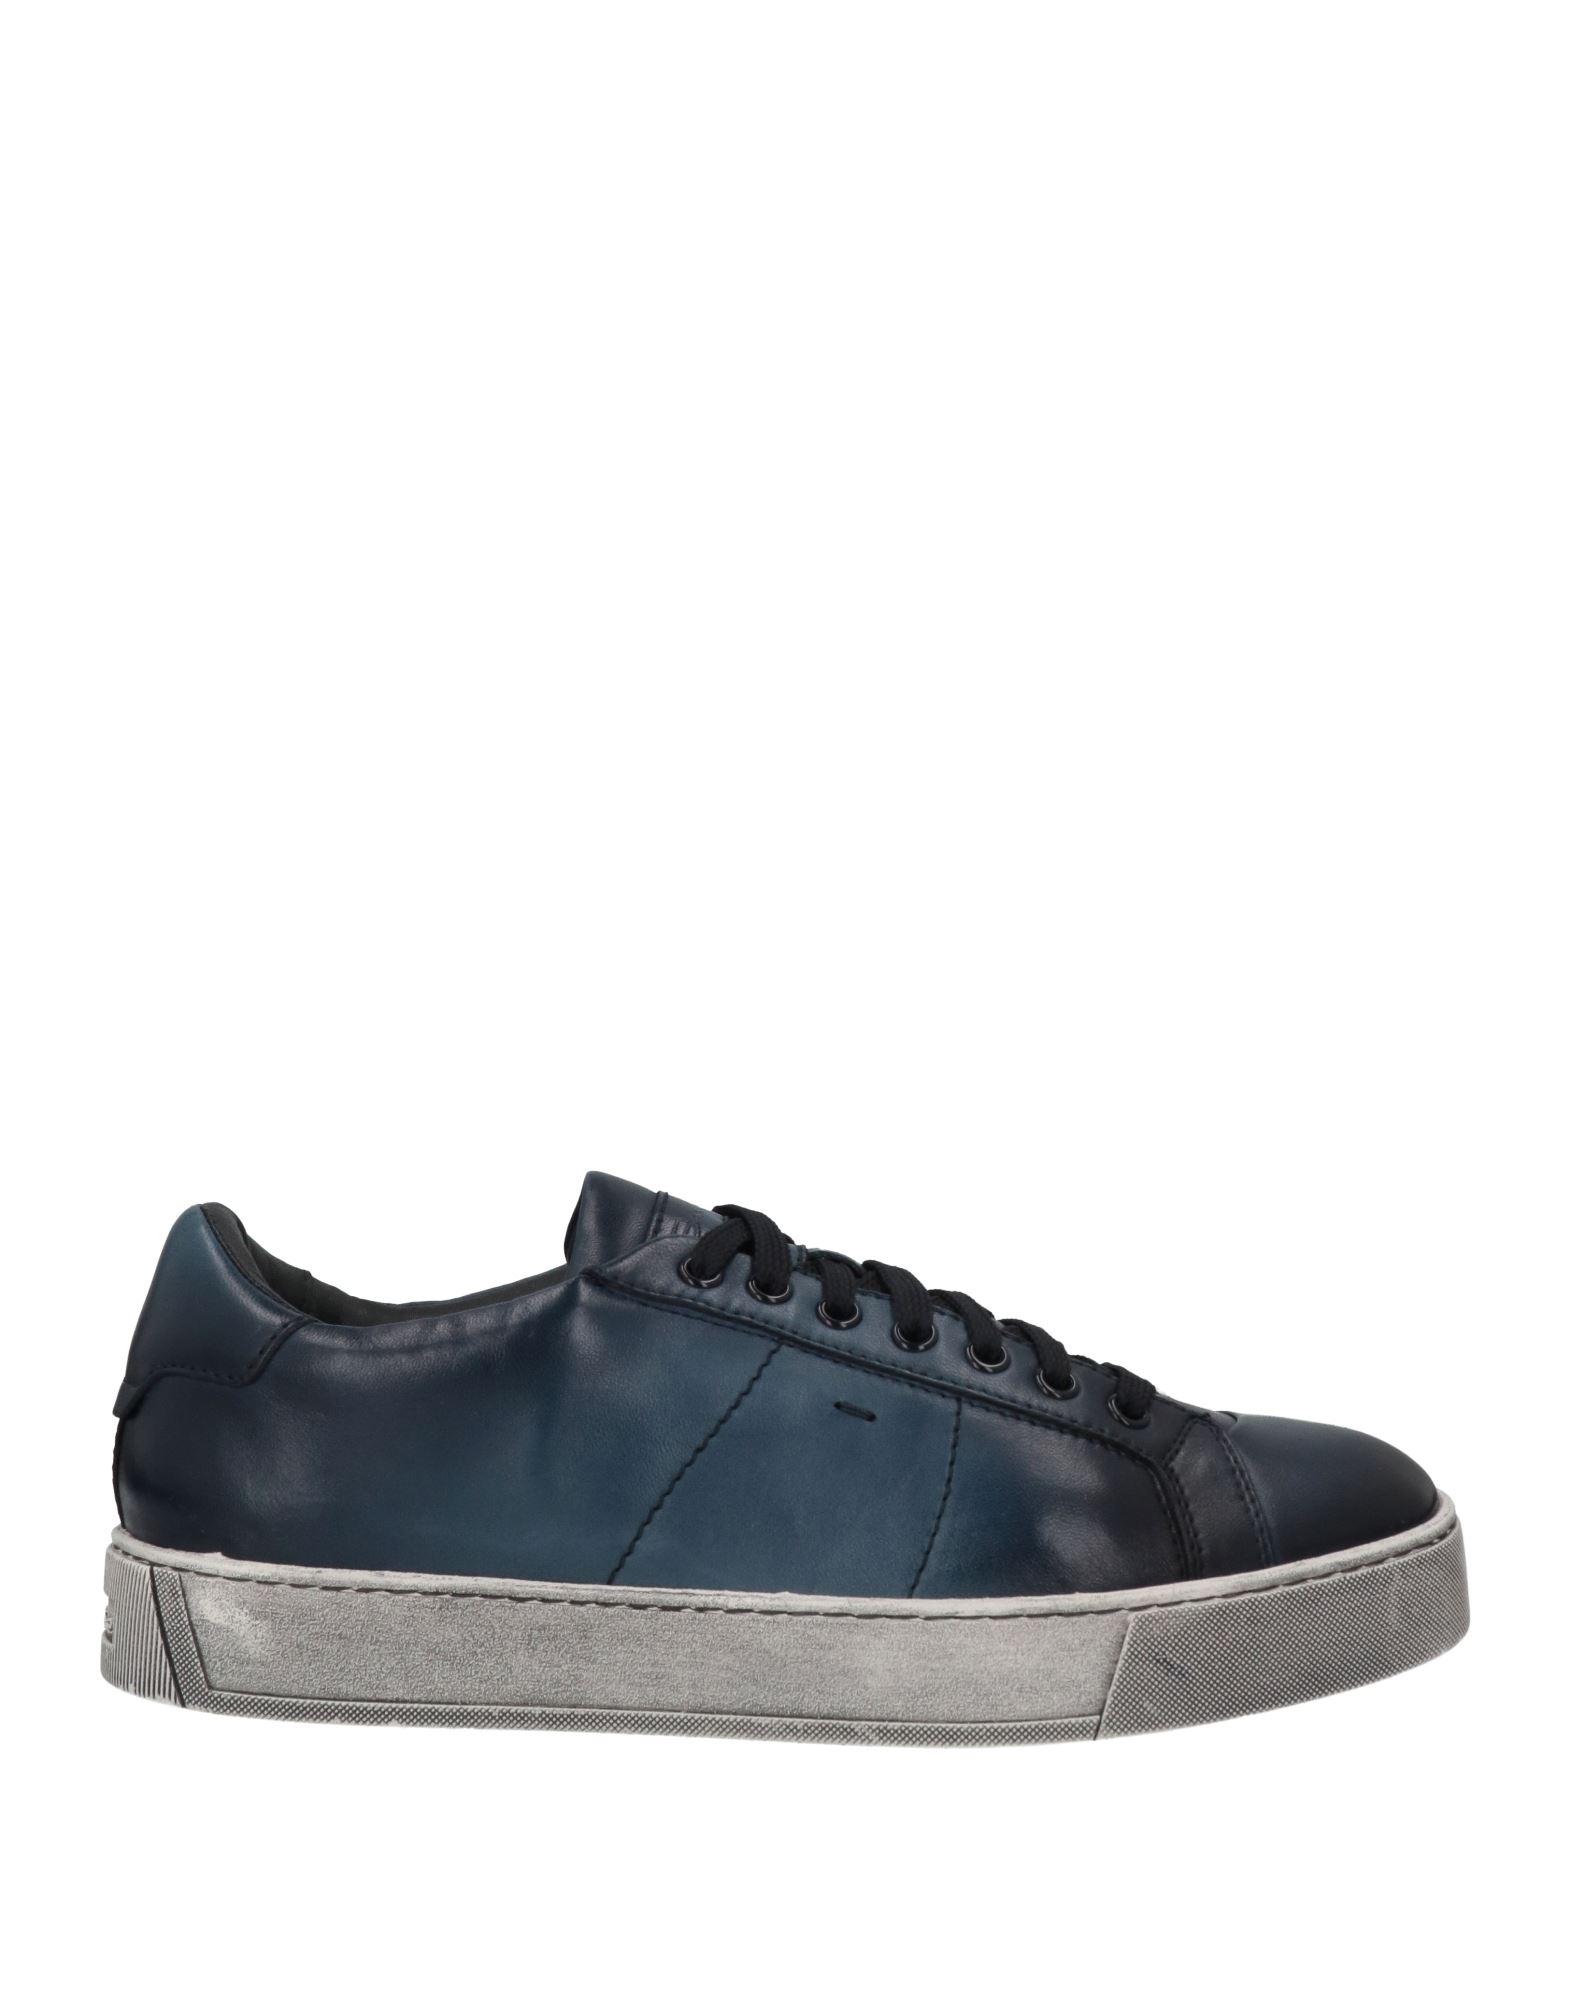 Santoni Sneakers In Navy Blue